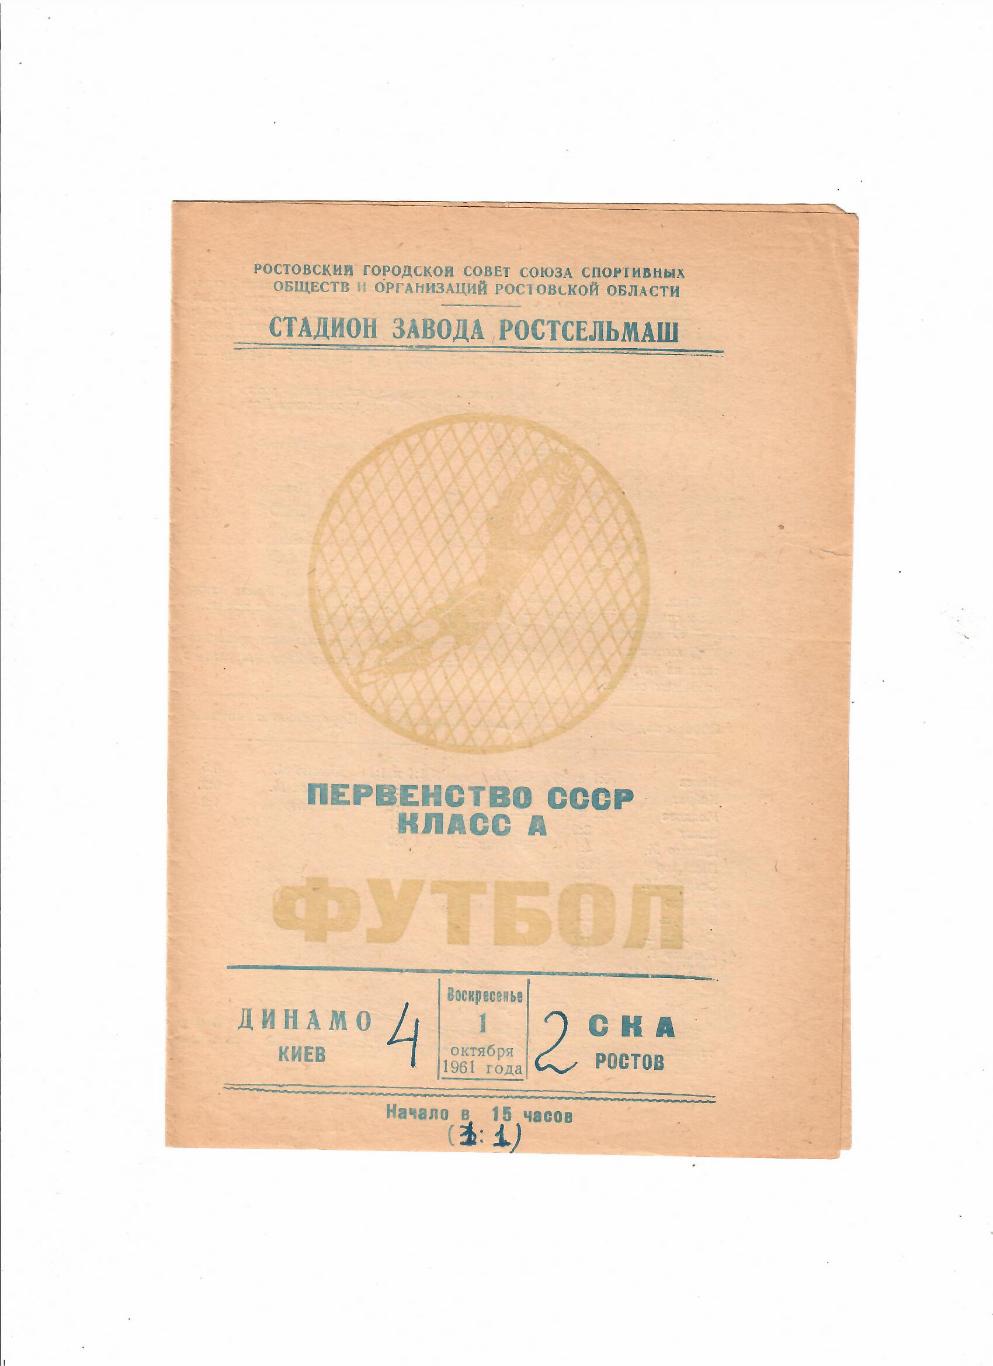 СКА Ростов-Динамо Киев 1961